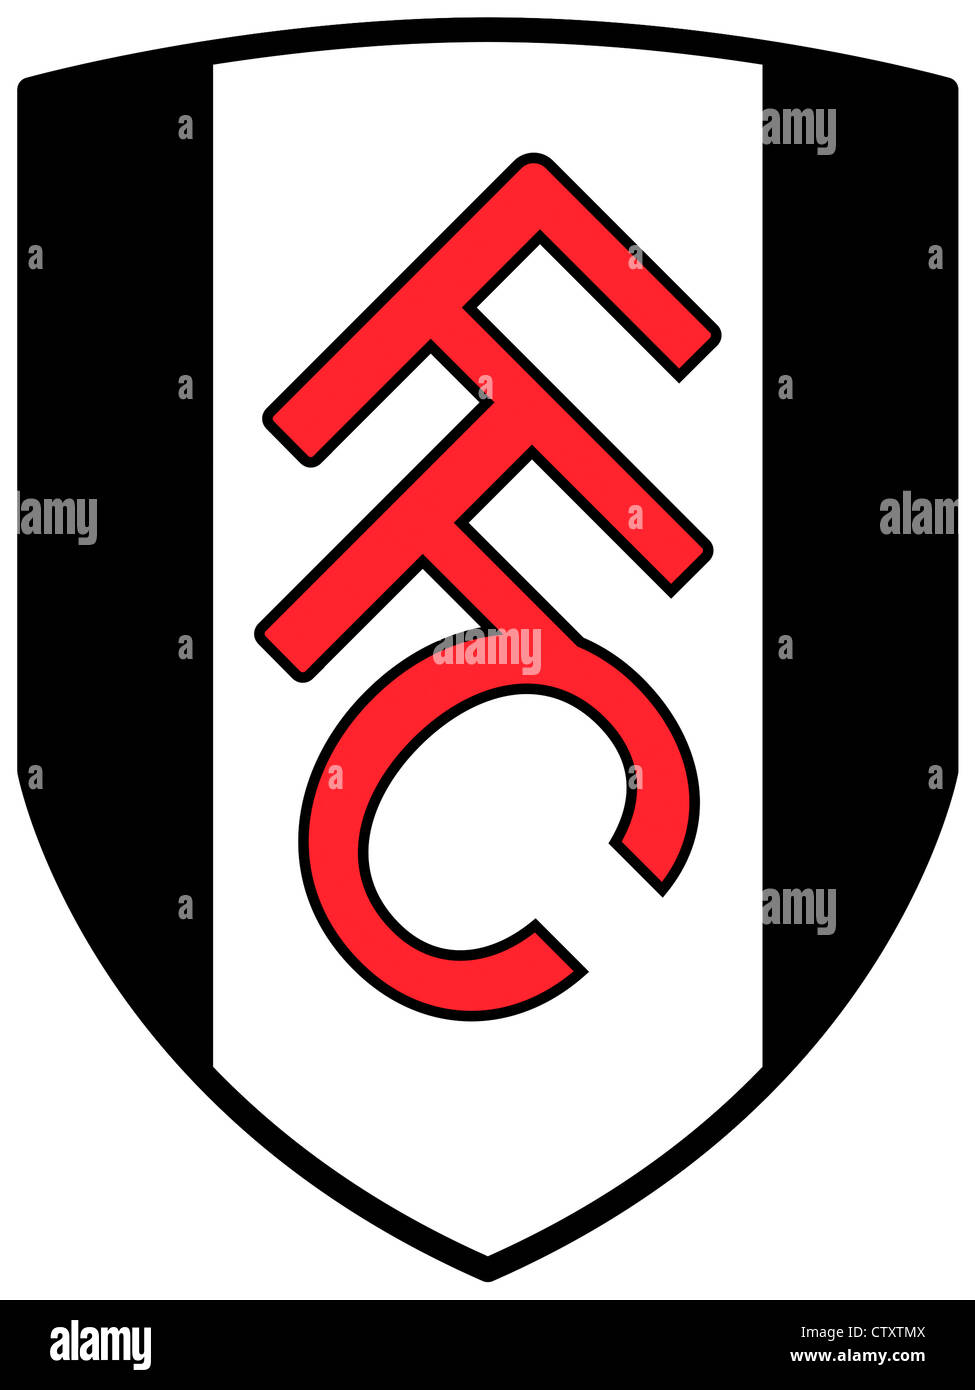 Logo der englischen Fußballmannschaft Fulham Football Club FFC. Stockfoto